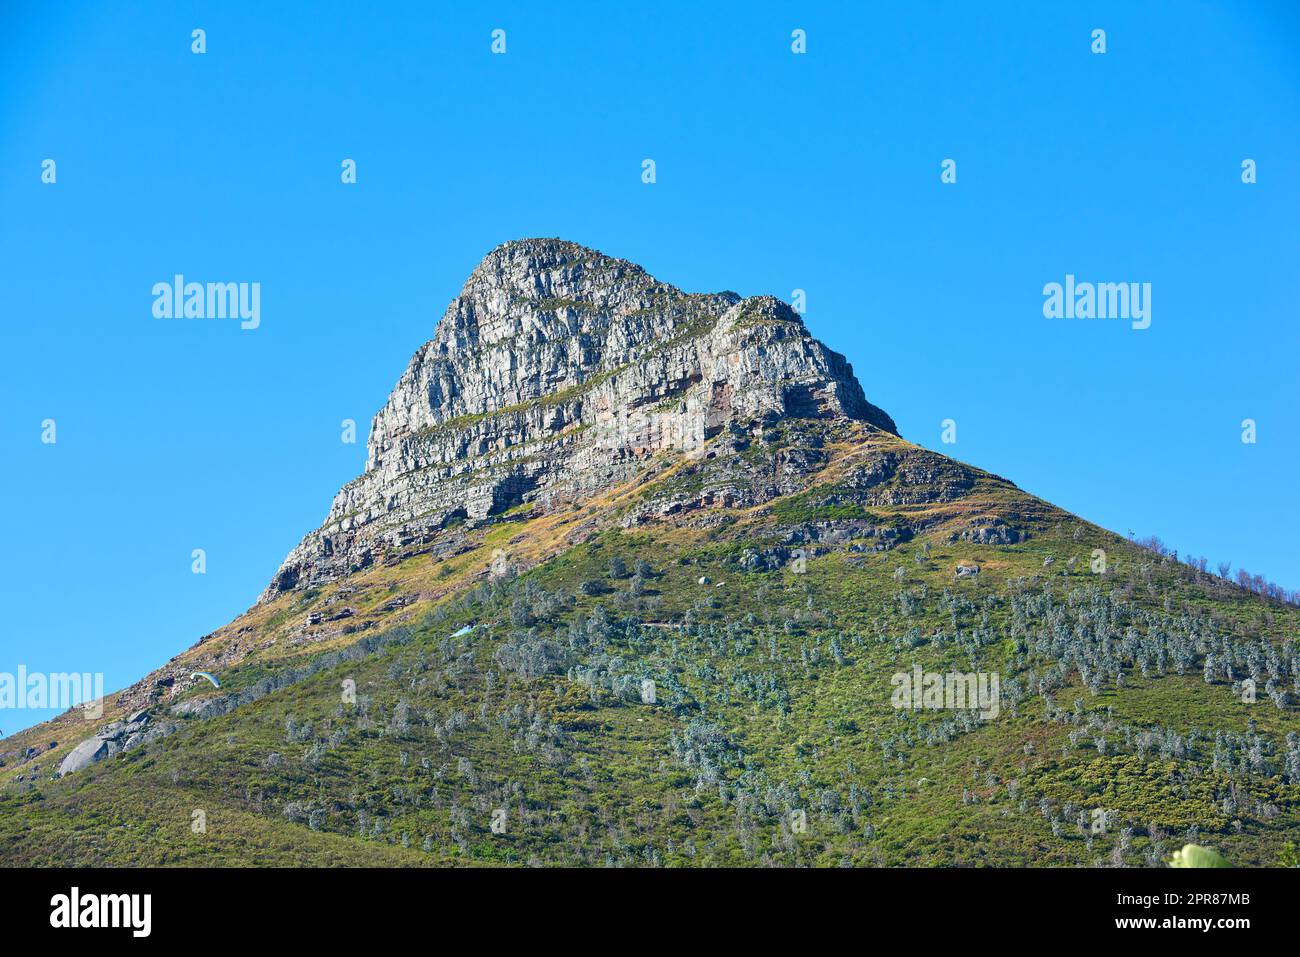 Lions Head Berg mit blauem Himmel und Kopierraum. Wunderschöner Blick auf einen felsigen Berggipfel bedeckt mit üppiger grüner Vegetation an einem beliebten Reiseziel in Kapstadt, Südafrika Stockfoto